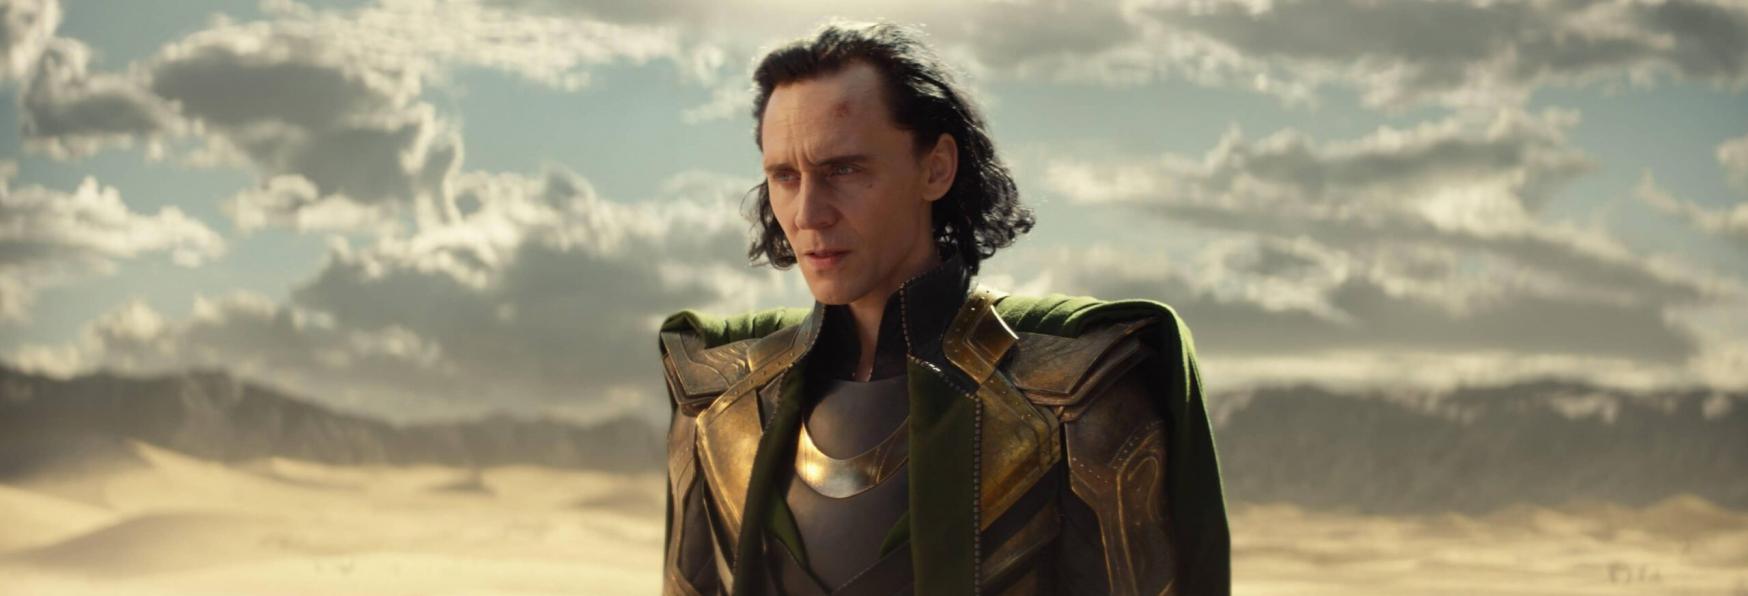 Loki 2: Ufficialmente Iniziate le Riprese della nuova Stagione. Ecco la Foto dal Set!